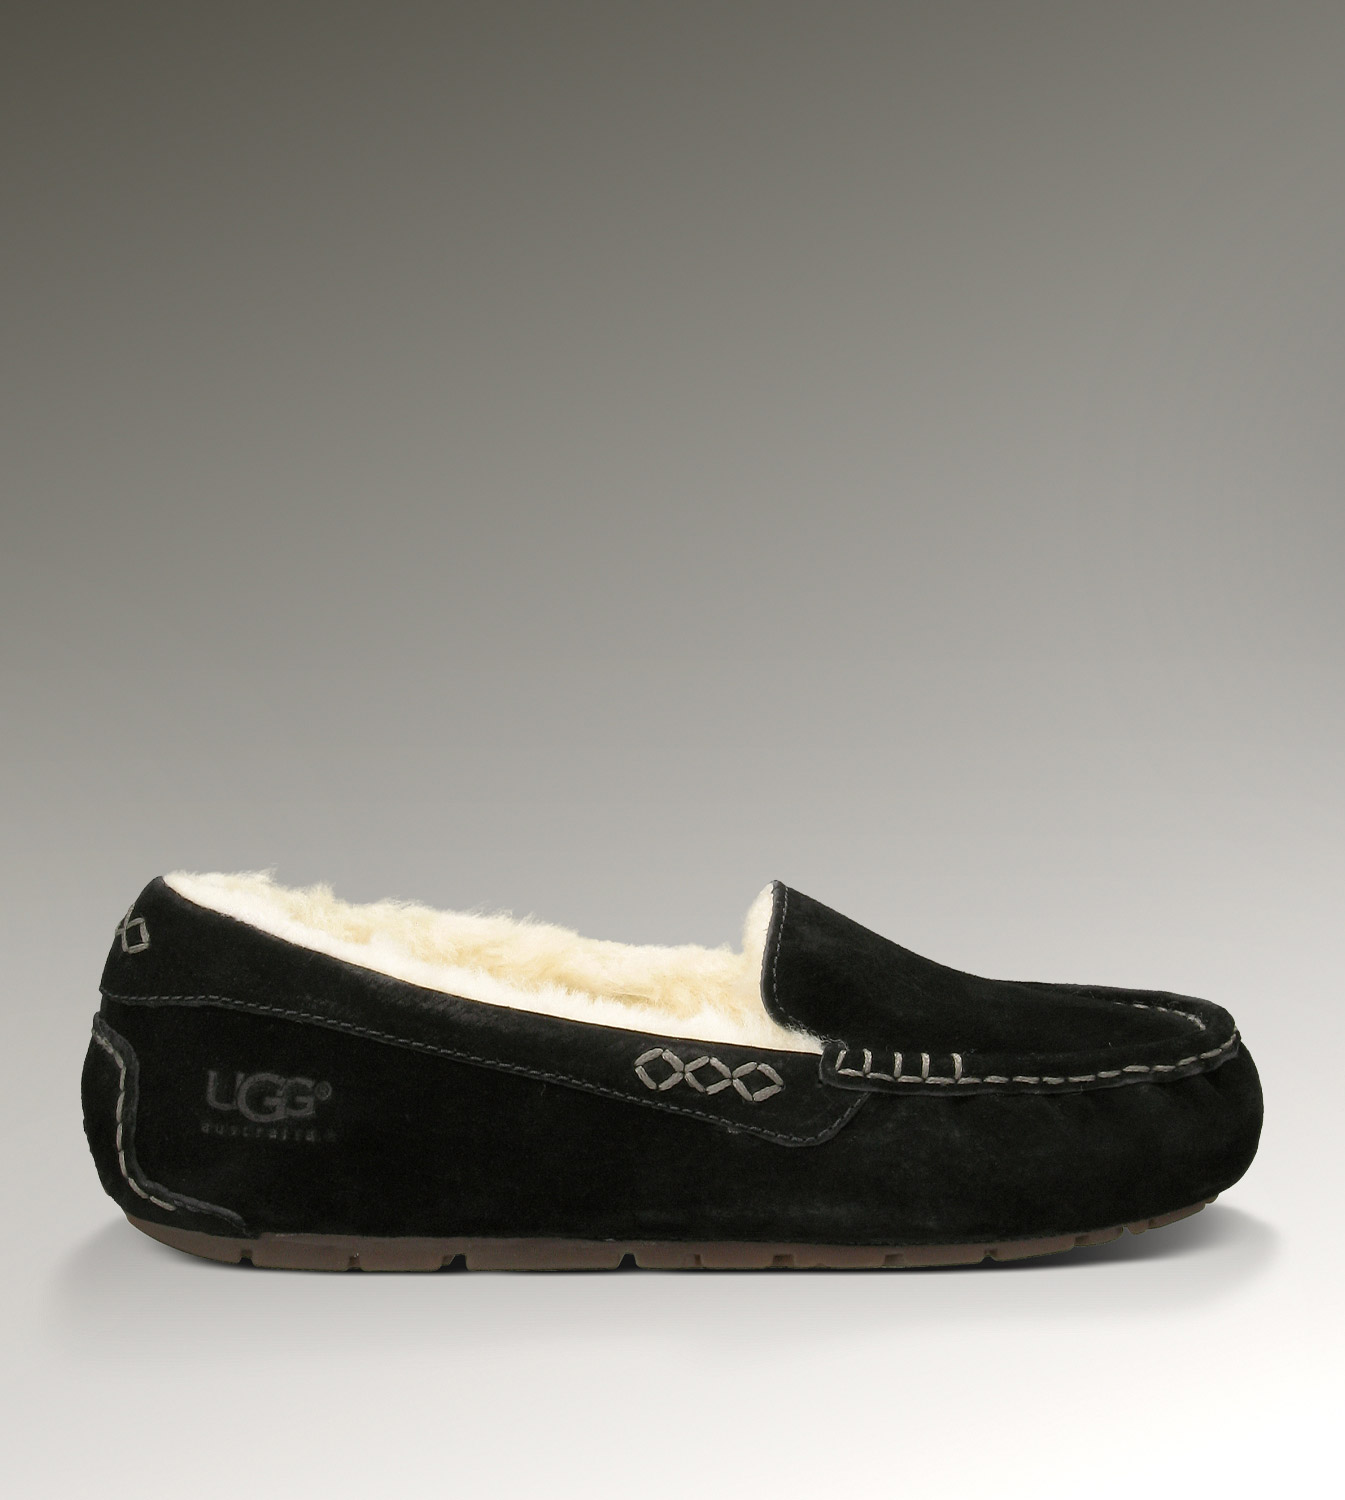 UGG Ansley 3312 Nero Pantofole